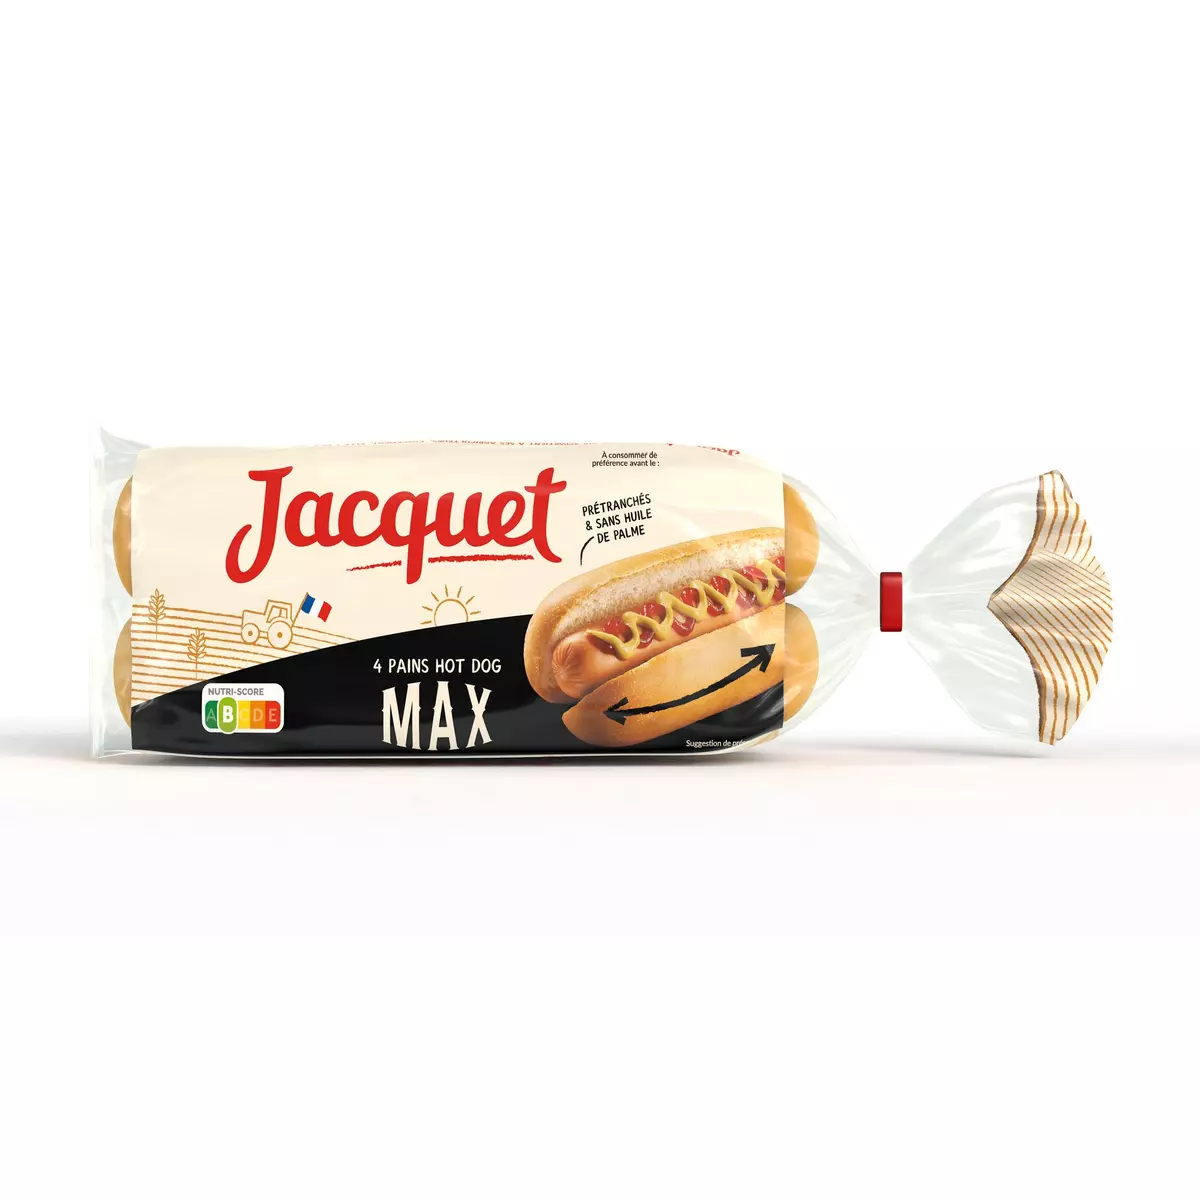 JACQUET Pains hot dog max prétranchés sans huile de palme x4 340g